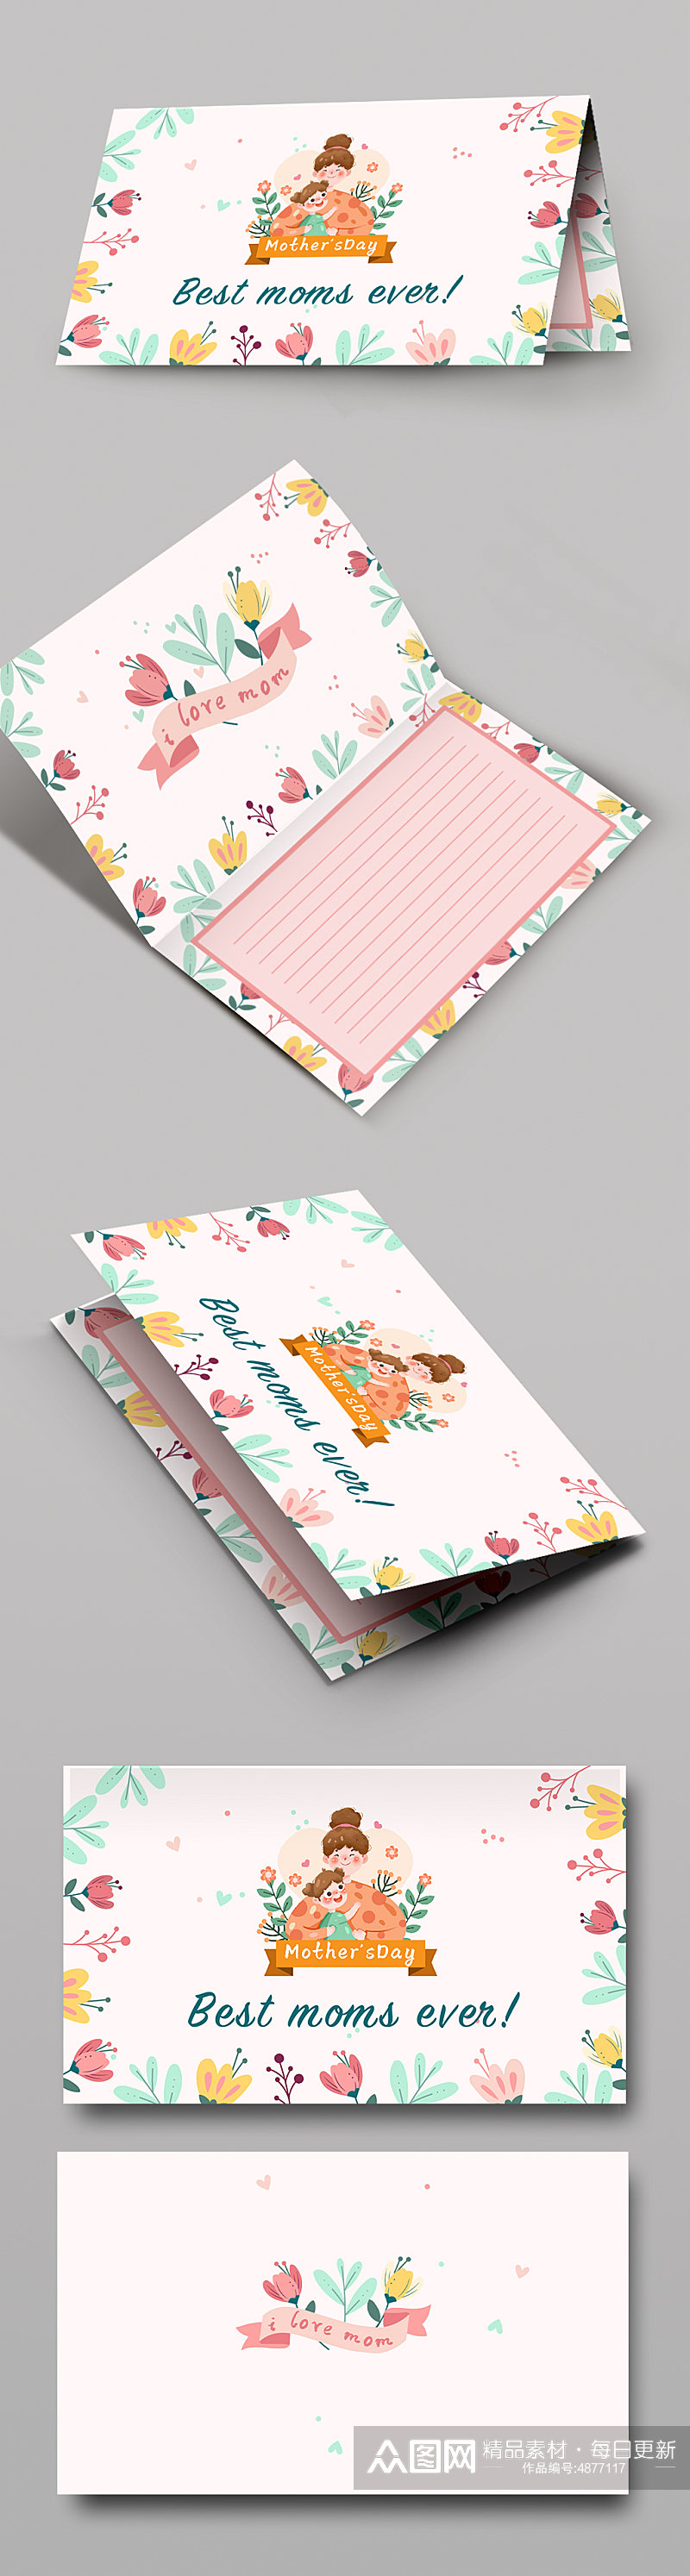 粉色母亲节卡片贺卡设计素材